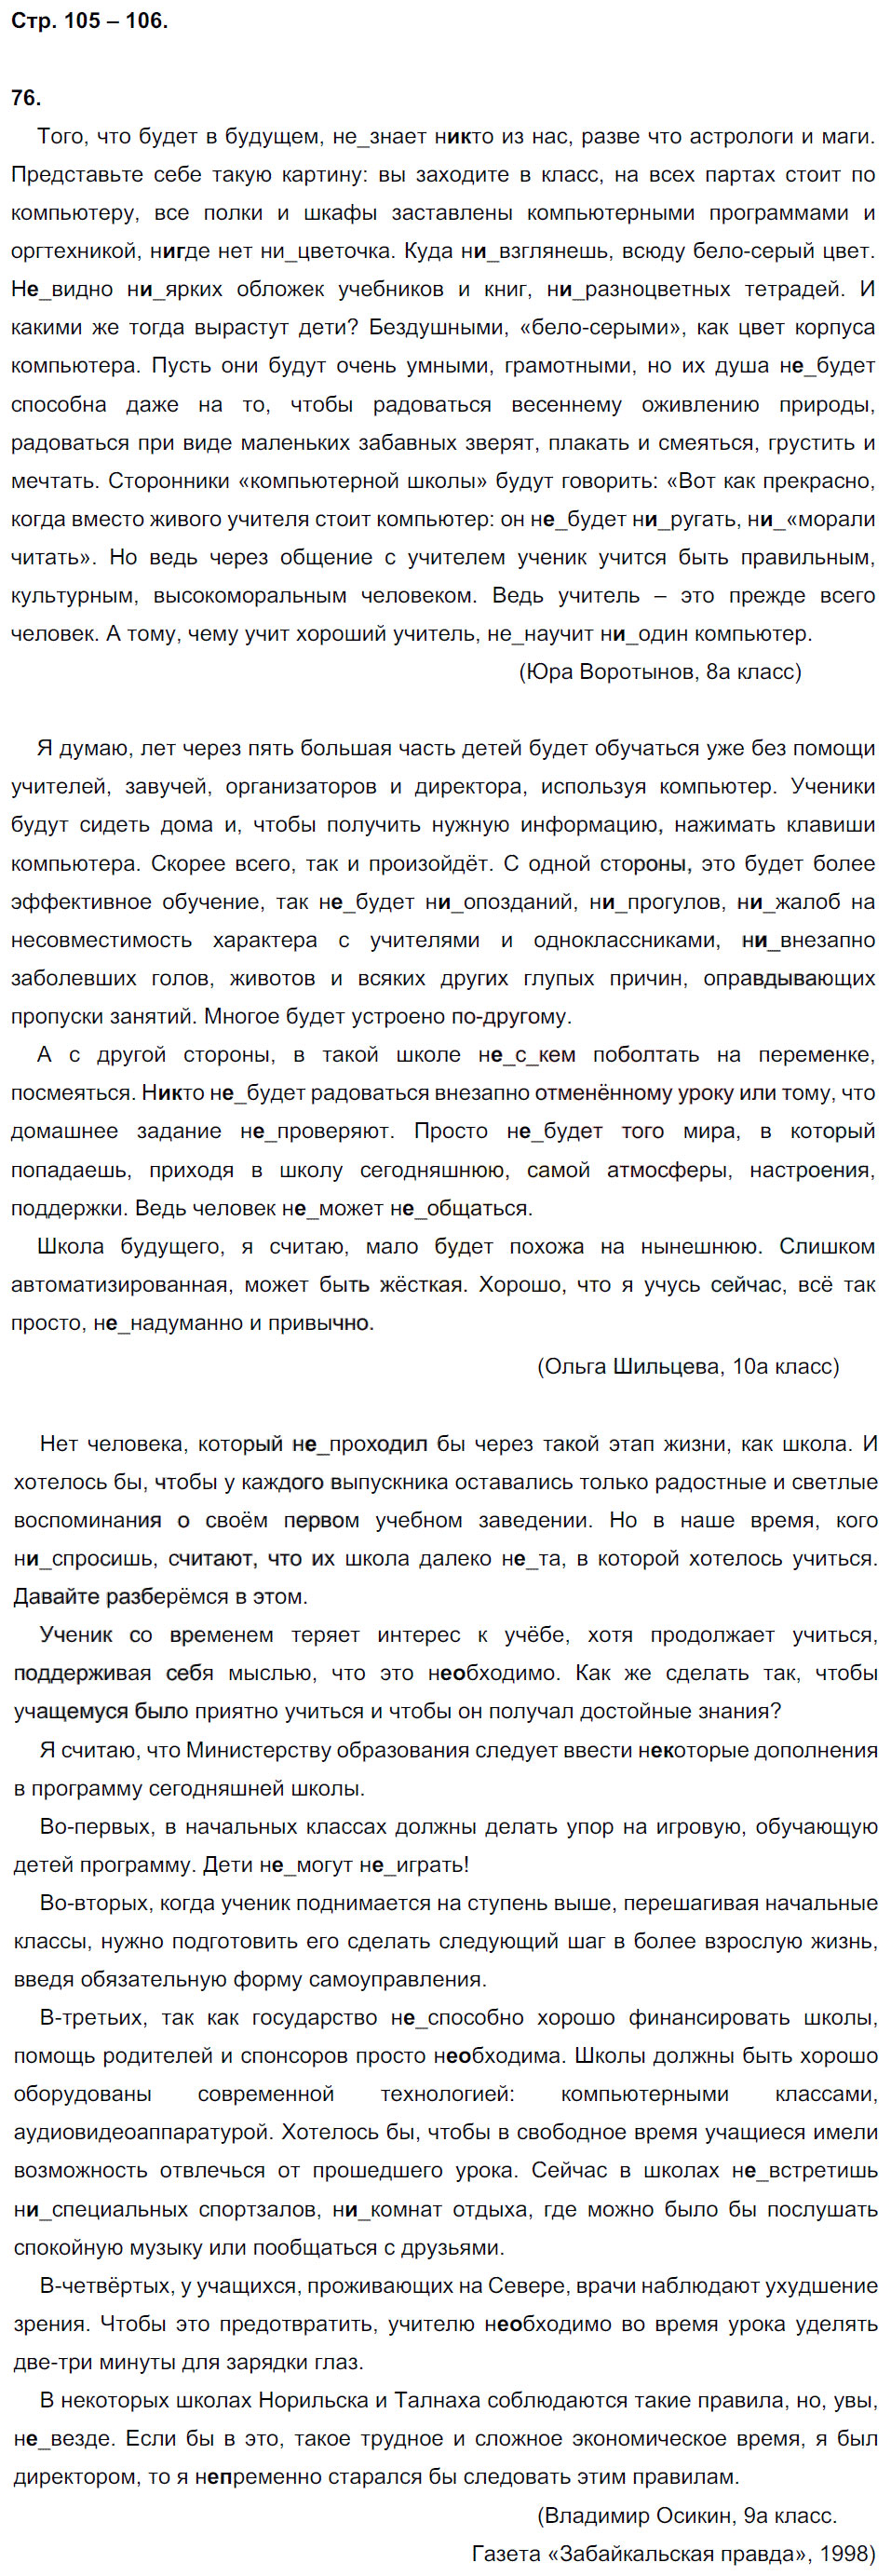 гдз 7 класс рабочая тетрадь страница 106 русский язык Ерохина